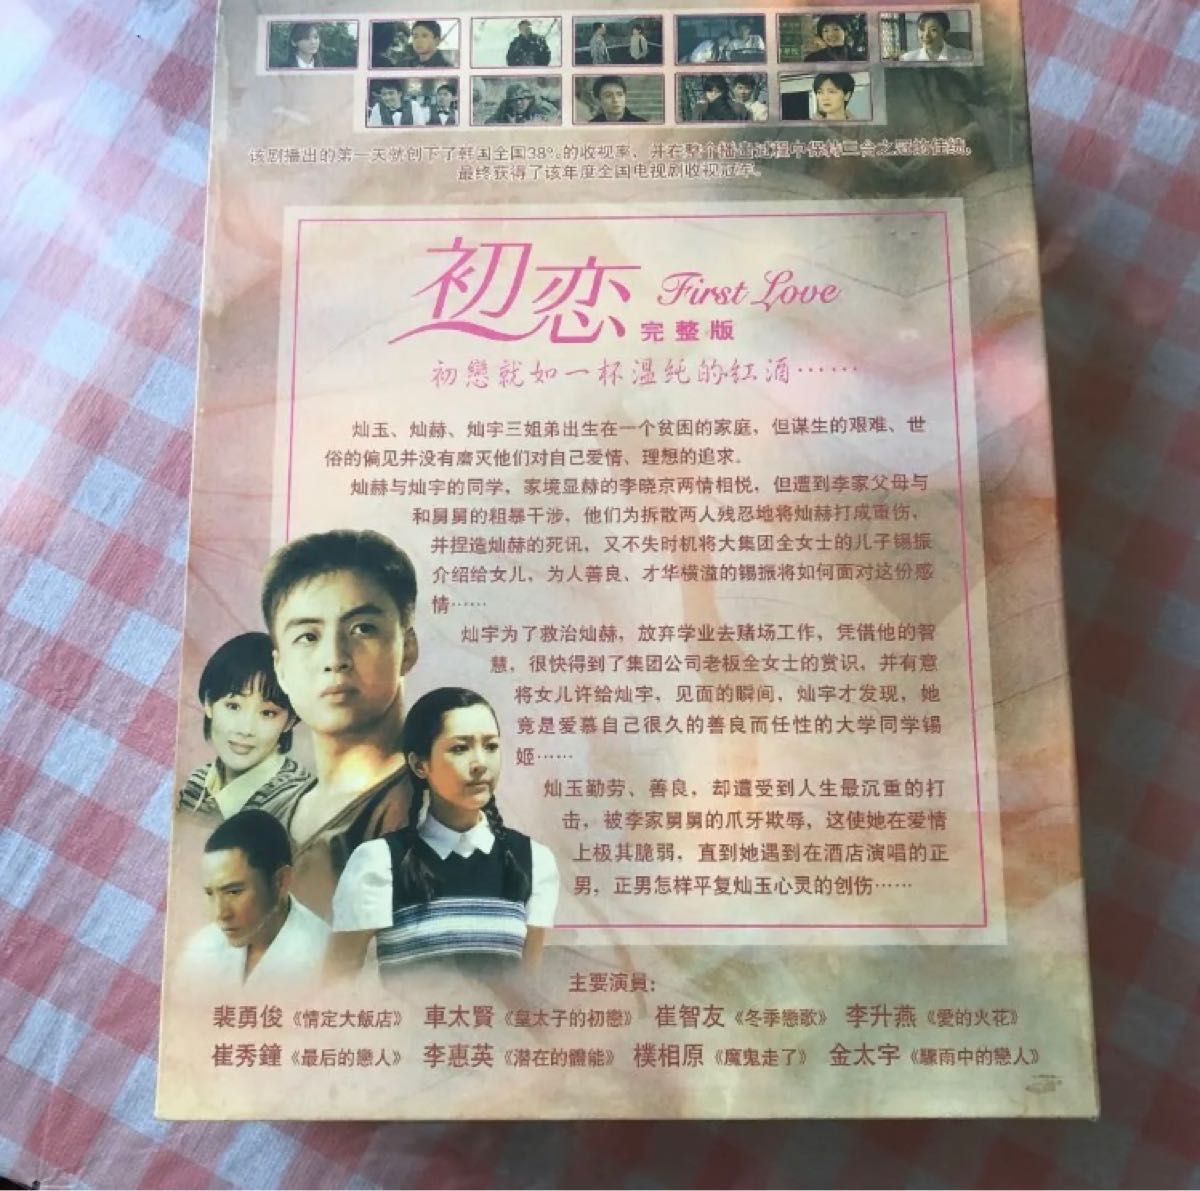 「初恋 DVD-BOX(1)〈10枚組〉」